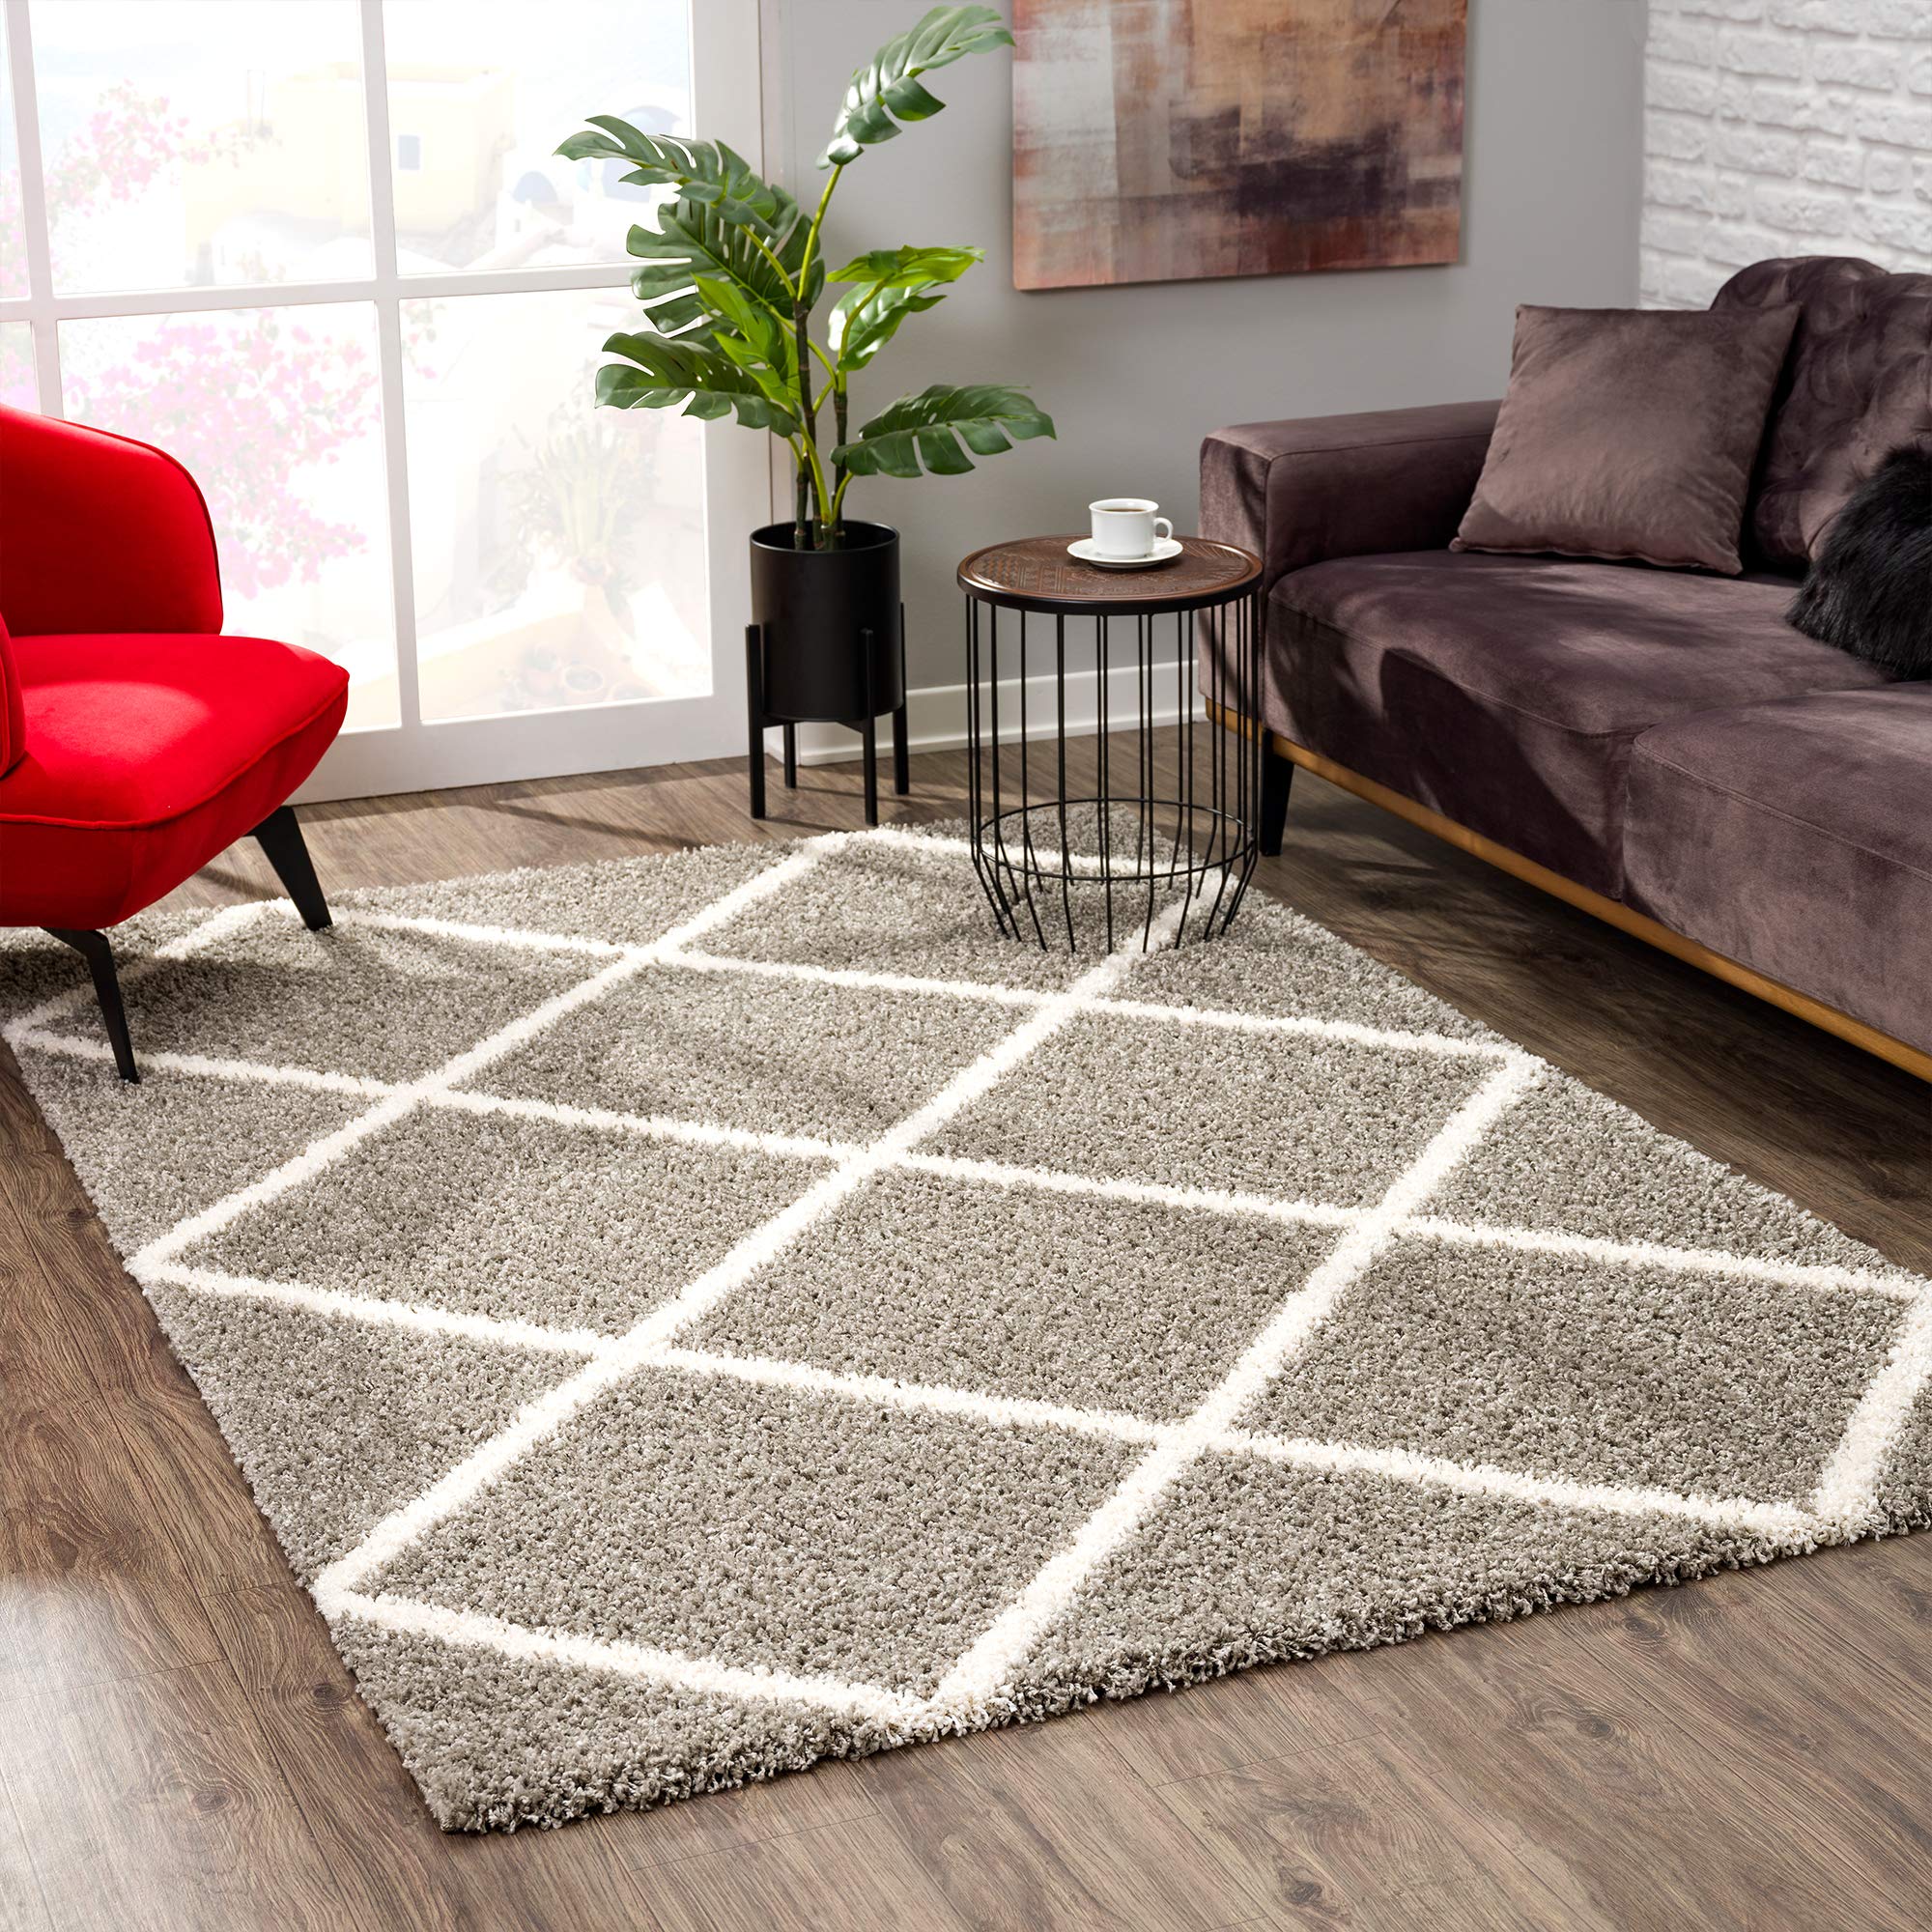 SANAT Madrid Shaggy Teppich - Hochflor Teppiche für Wohnzimmer, Schlafzimmer, Küche - Grau, Größe: 80x150 cm